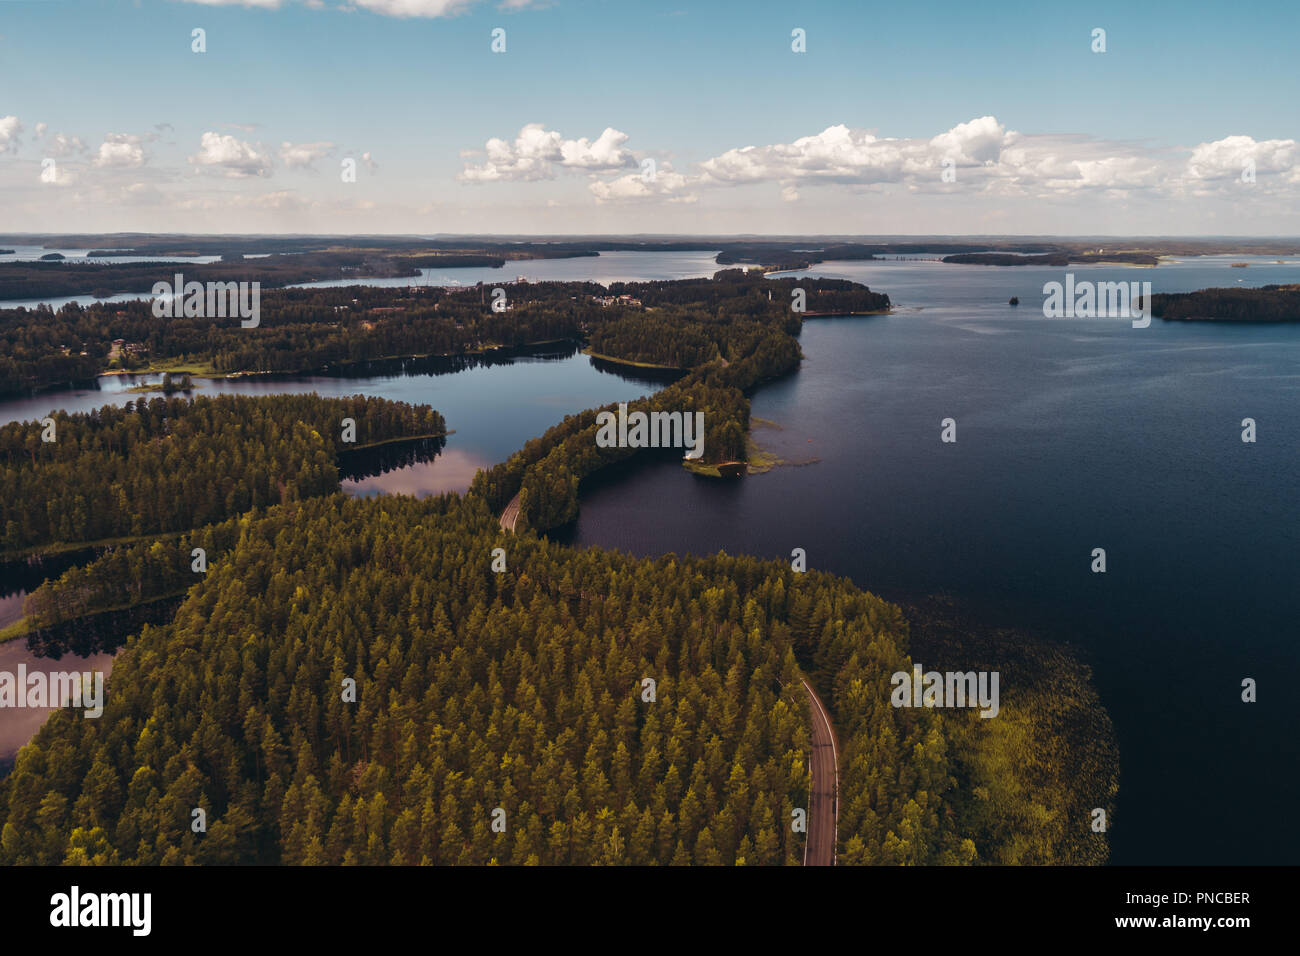 Finlande Punkaharju, avec des lacs scintillants entre le grand pins qui poussent sur les deux côtés de la crête, est le plus connu des paysages nationaux et stro Banque D'Images